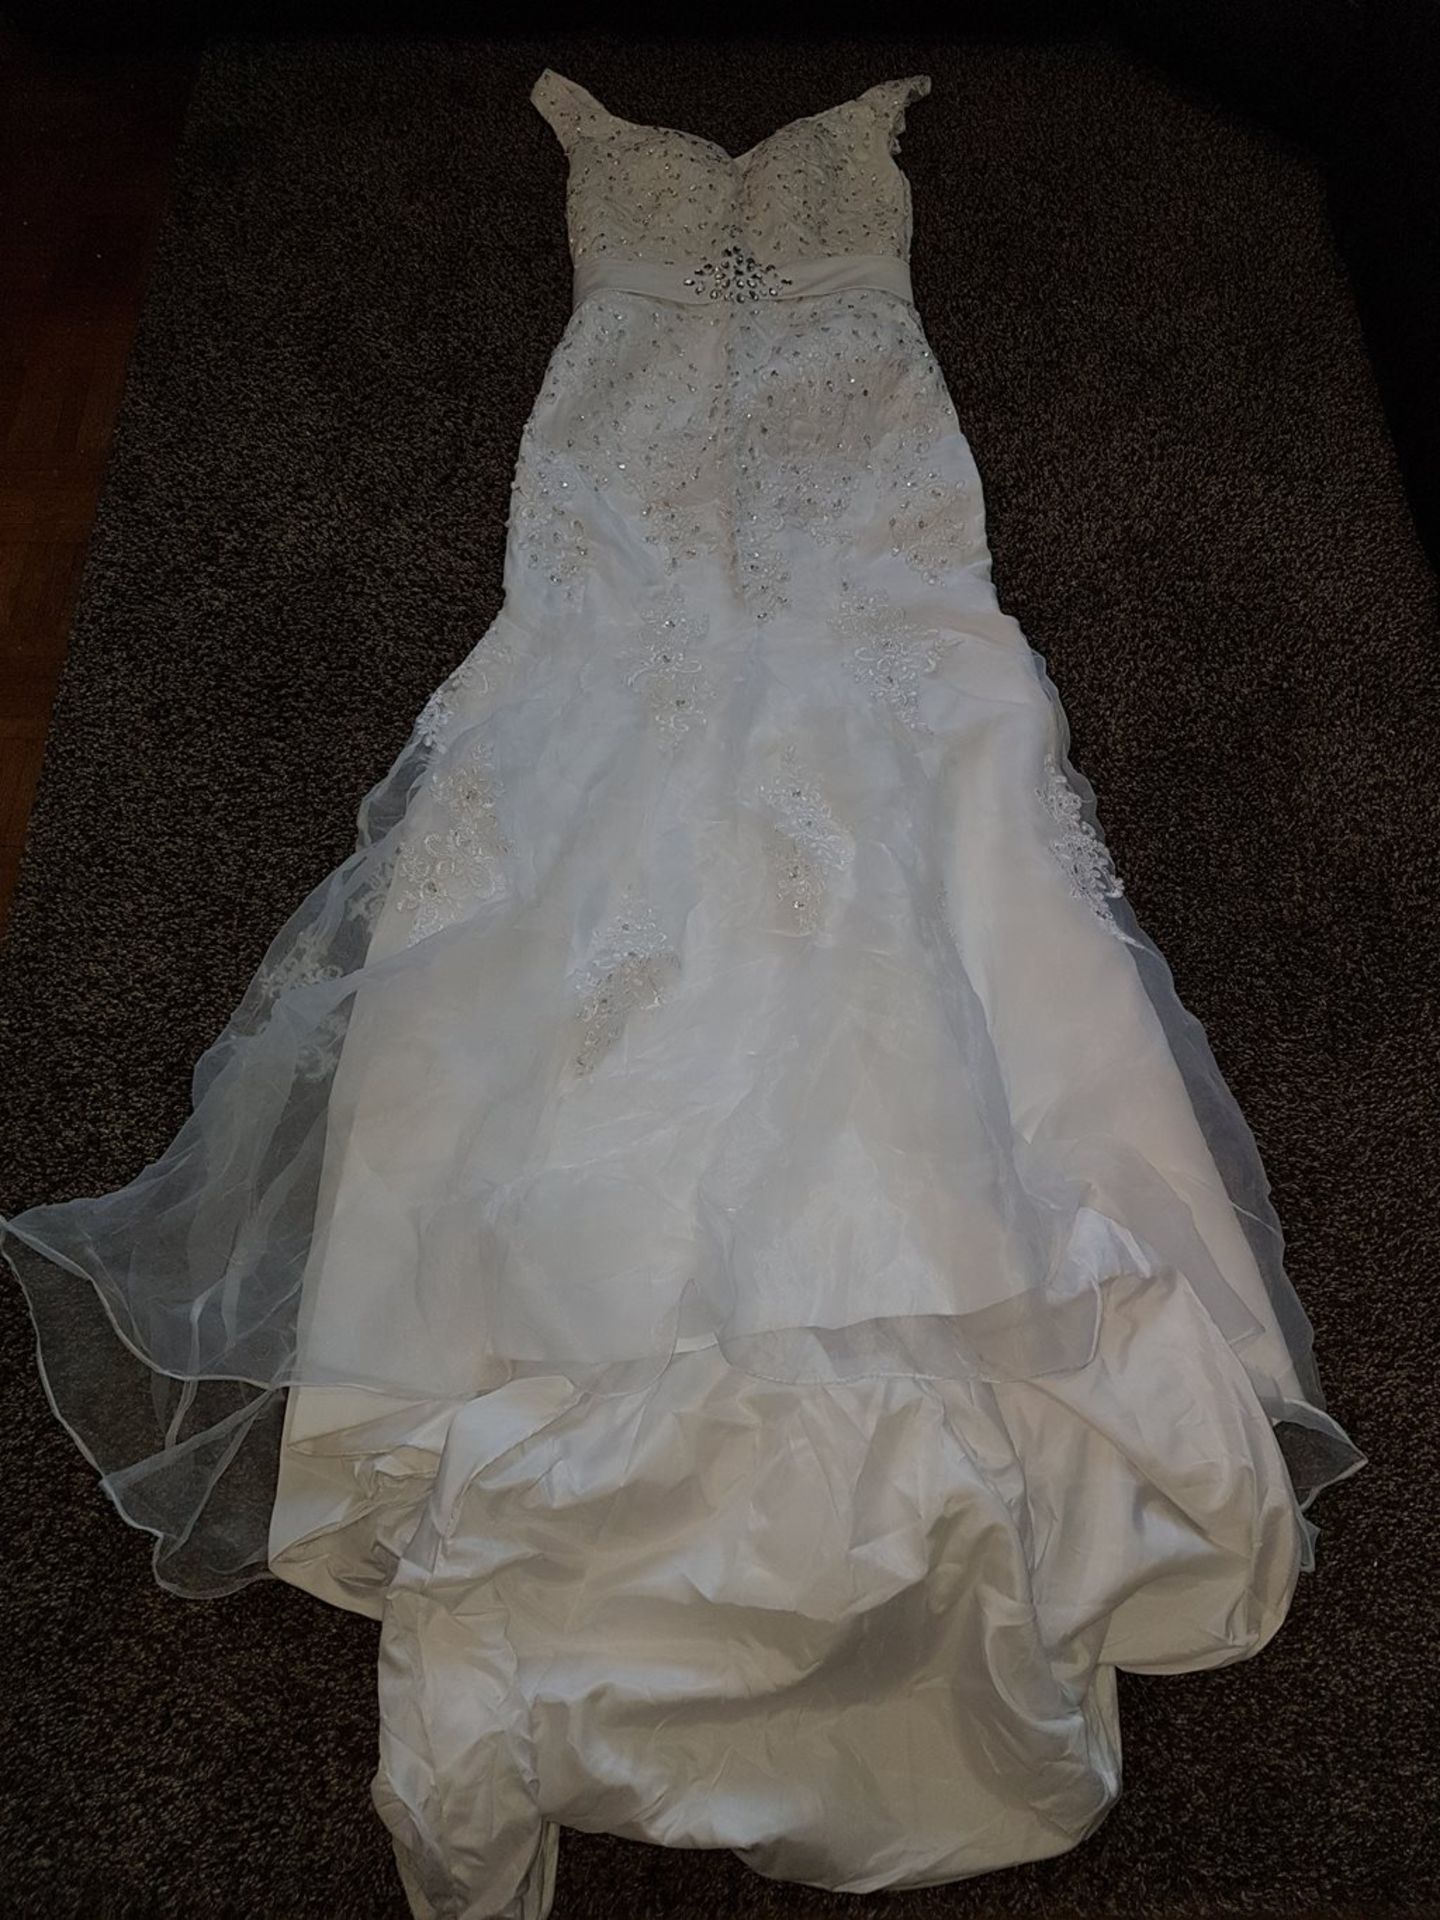 Customer Returns White Wedding Dress RRP å£300